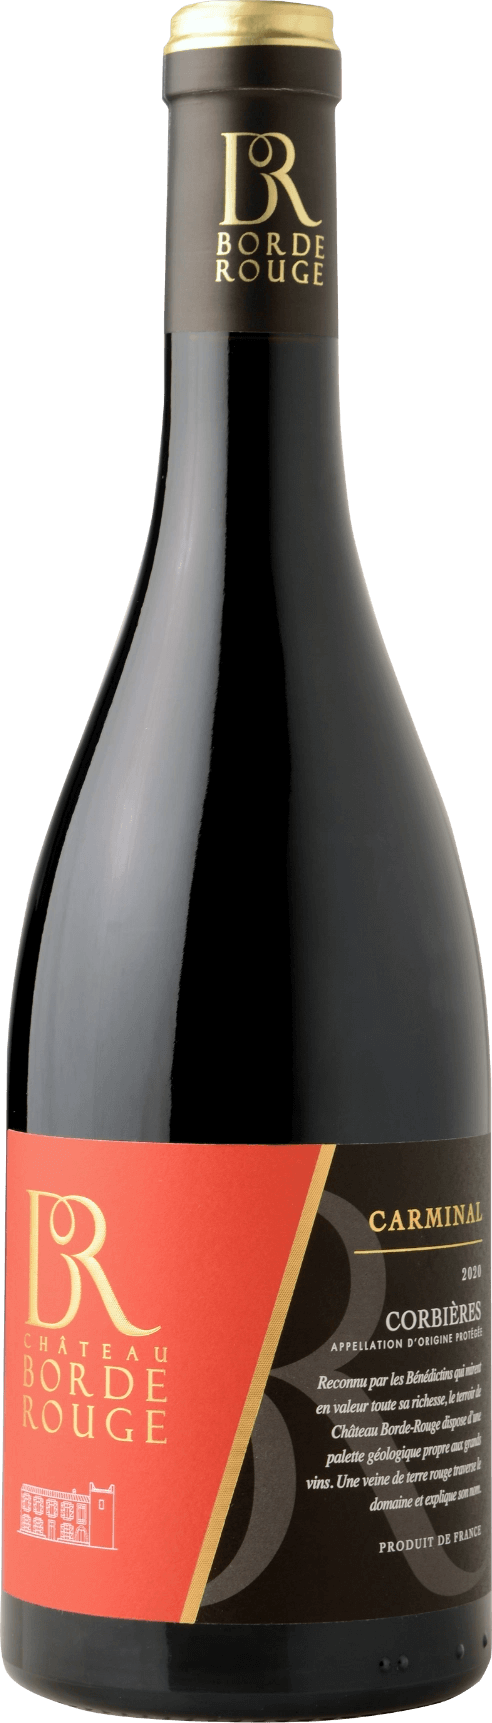 carminal-carminal rouge- corbières borderouge-lagrasse-grand vin de corbieres-aoc corbieres-vin rouge corbières de qualite